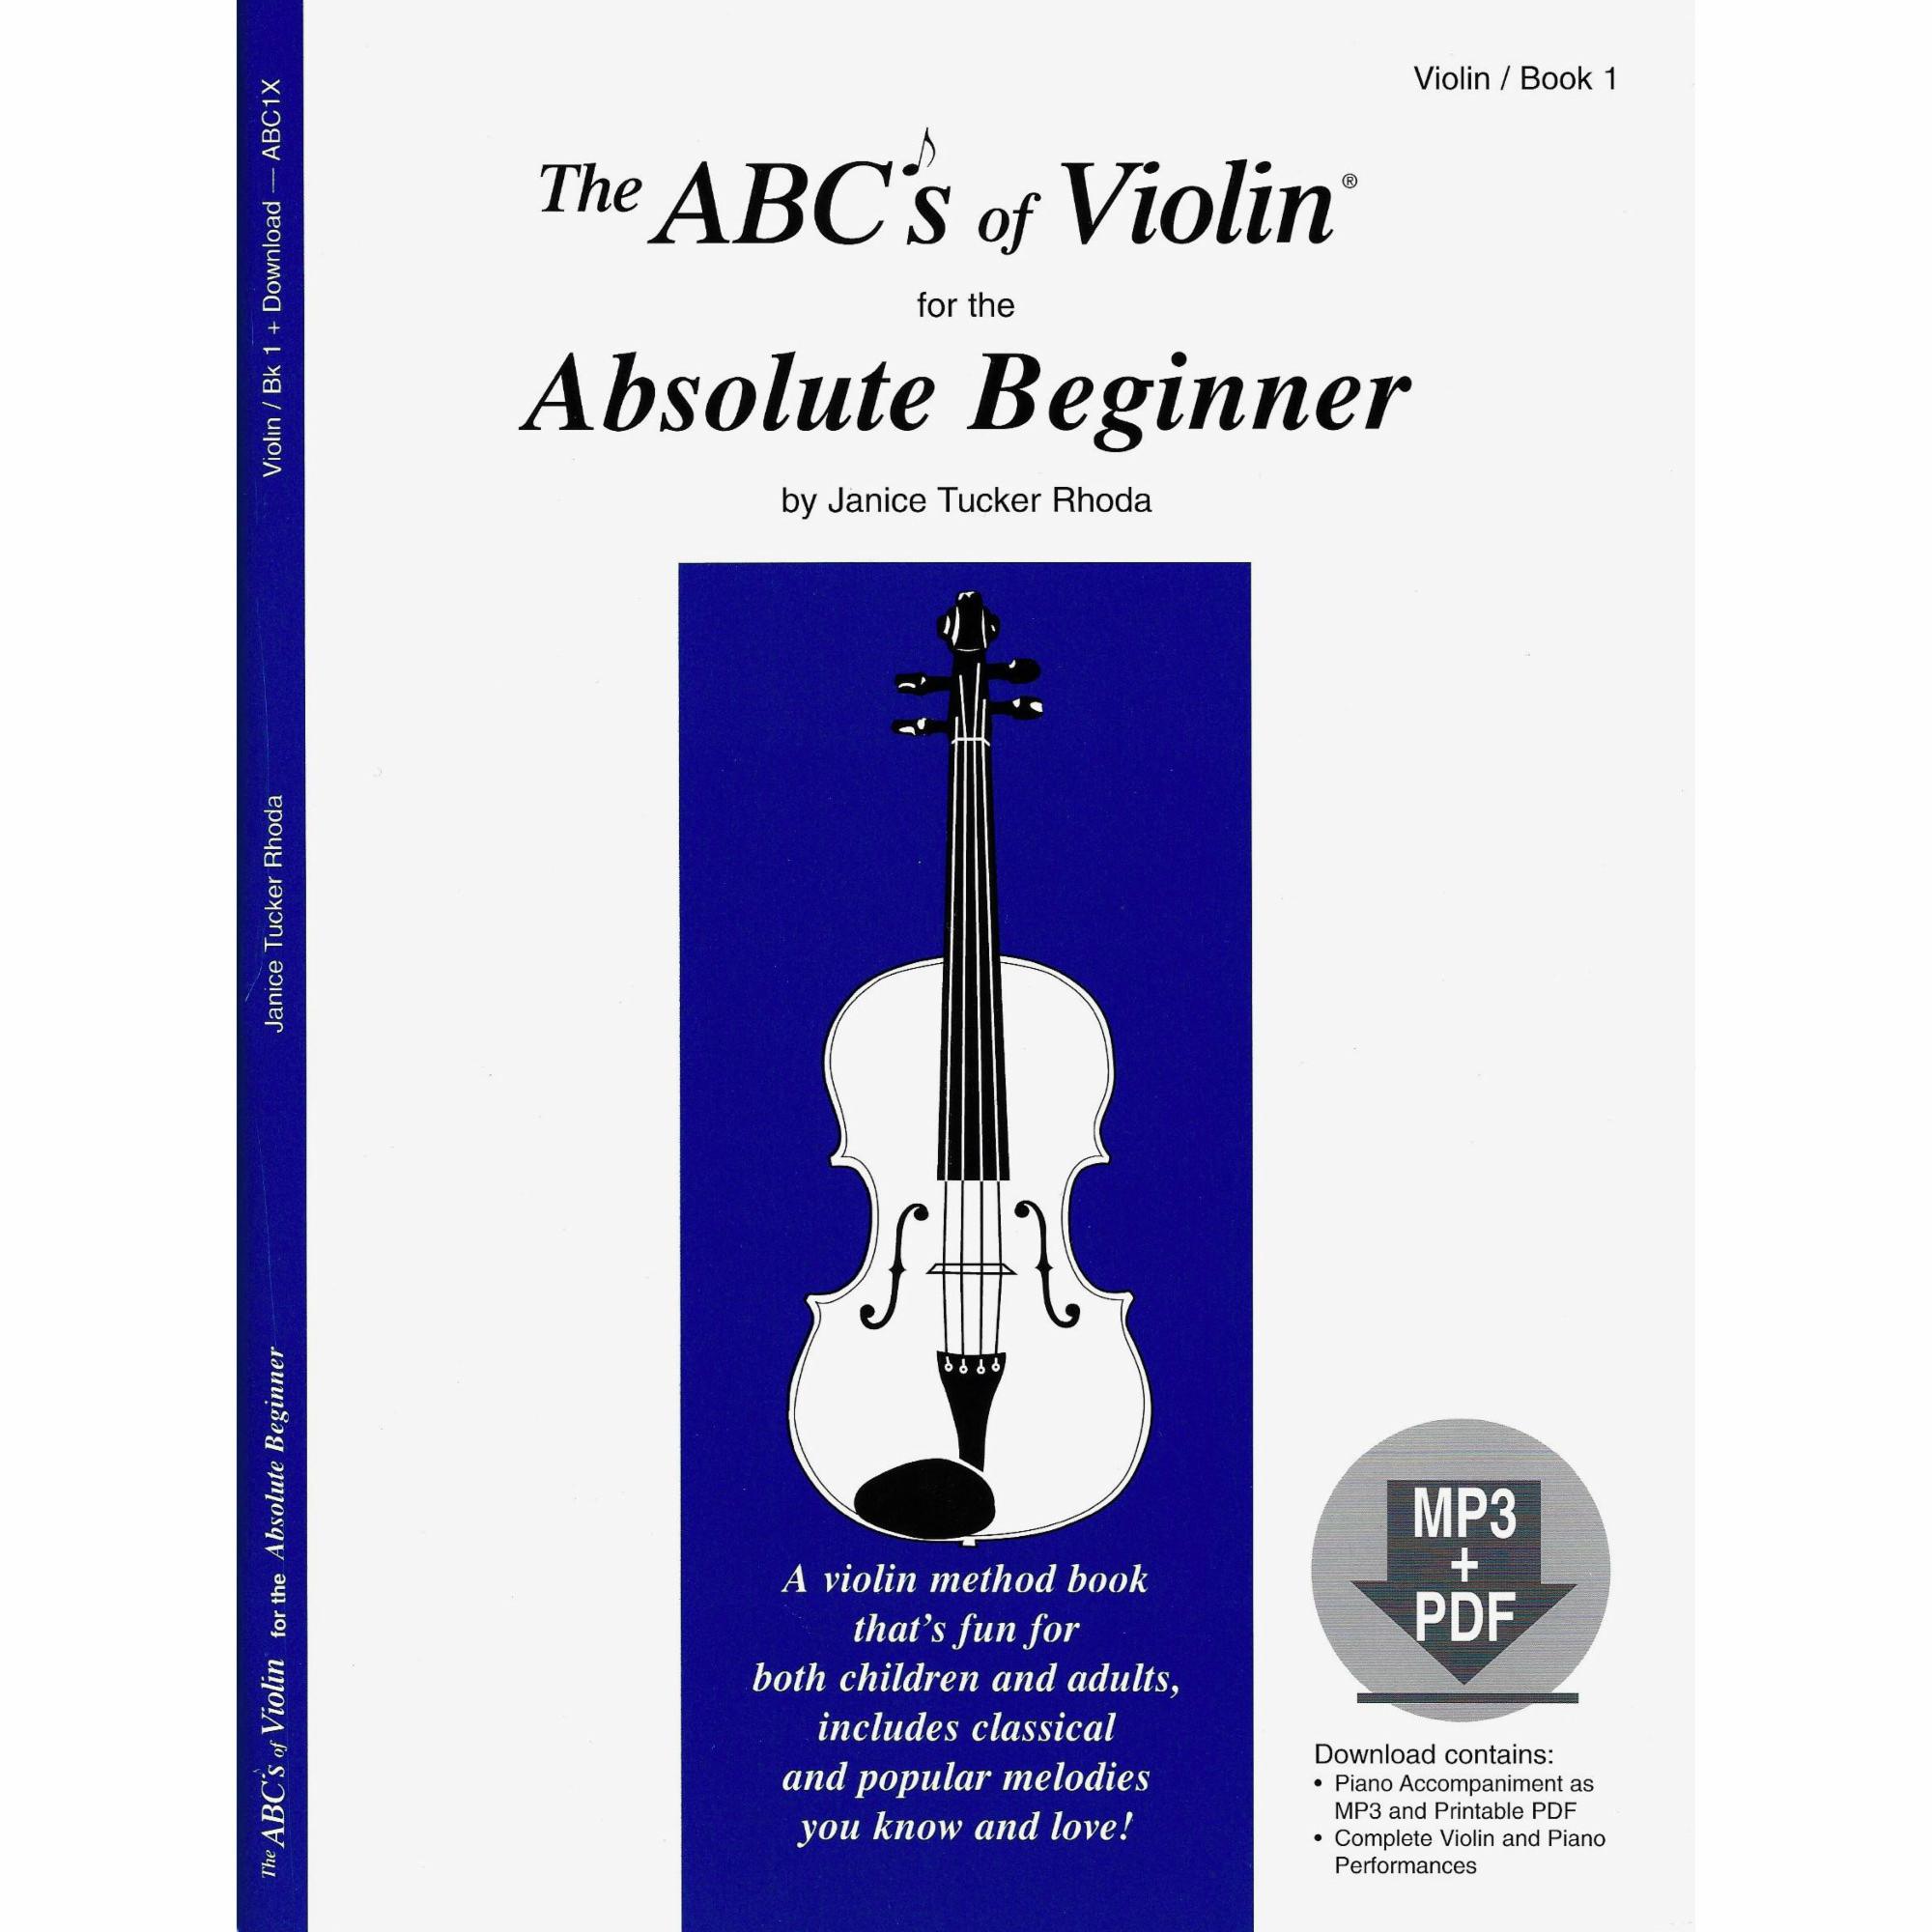 The ABC's of Violin, Books 1-5